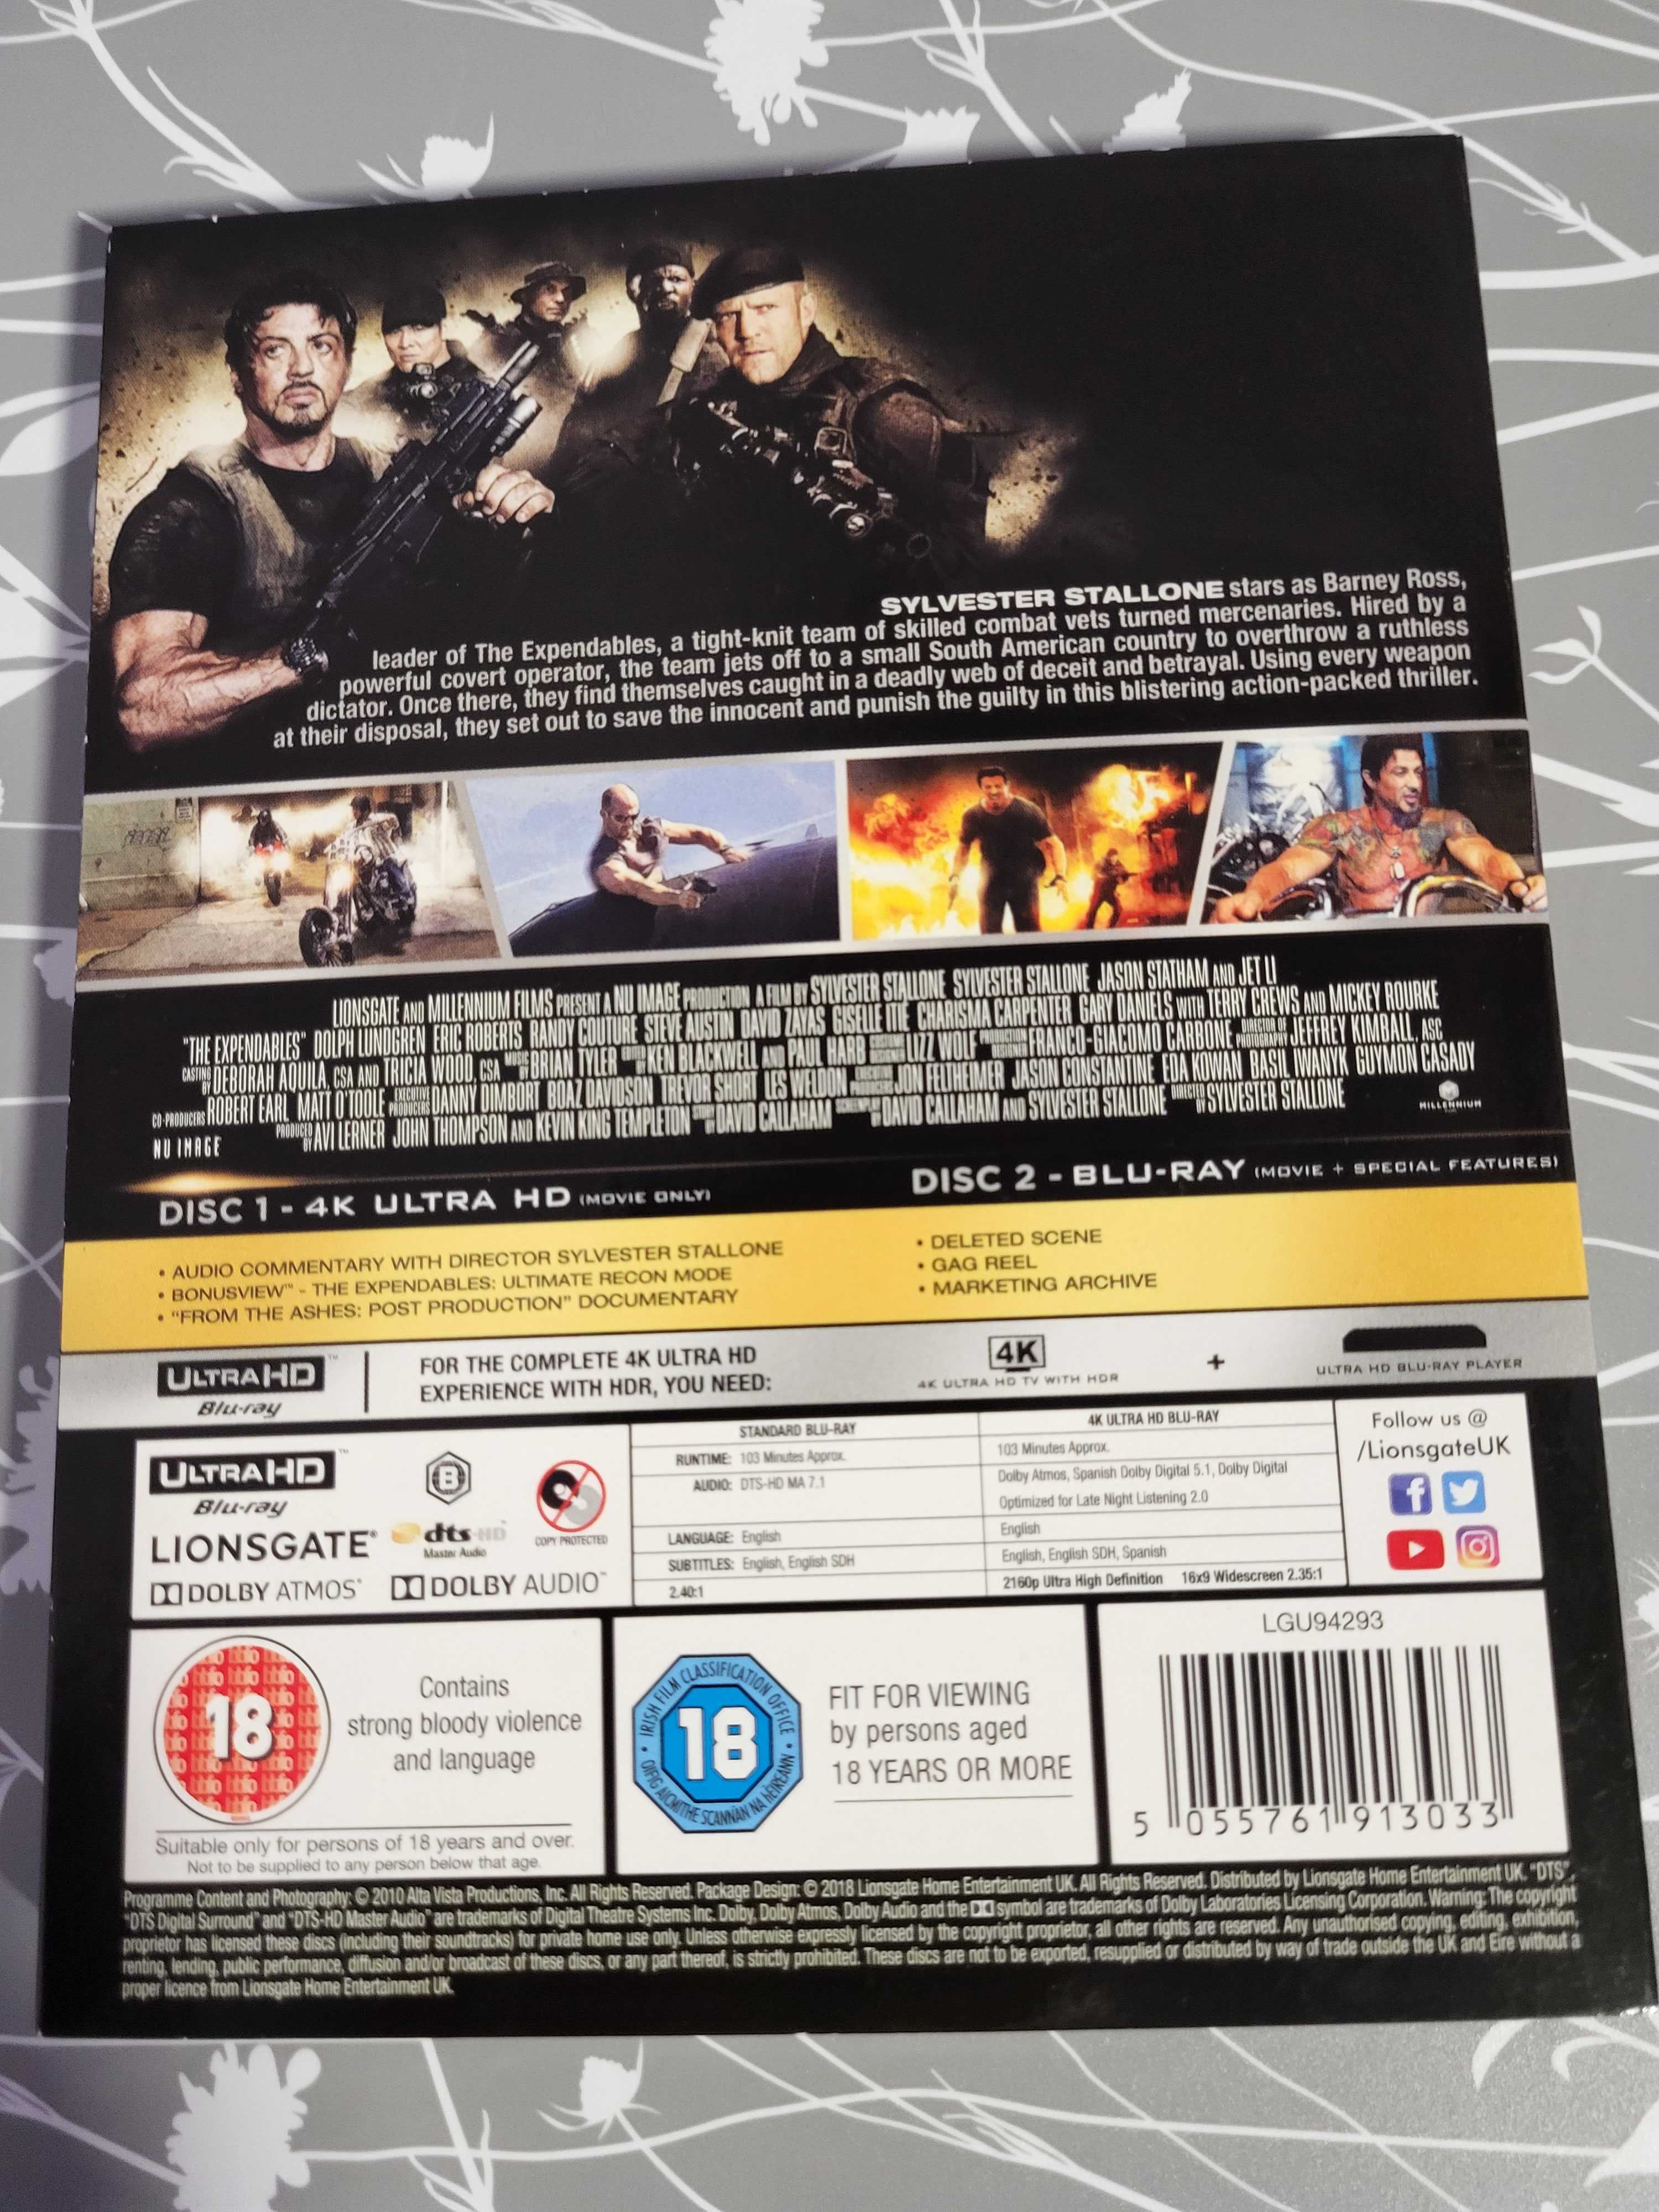 The Expendables płyta DVD 4K,Ultra HD + Blu-Ray sprzedam